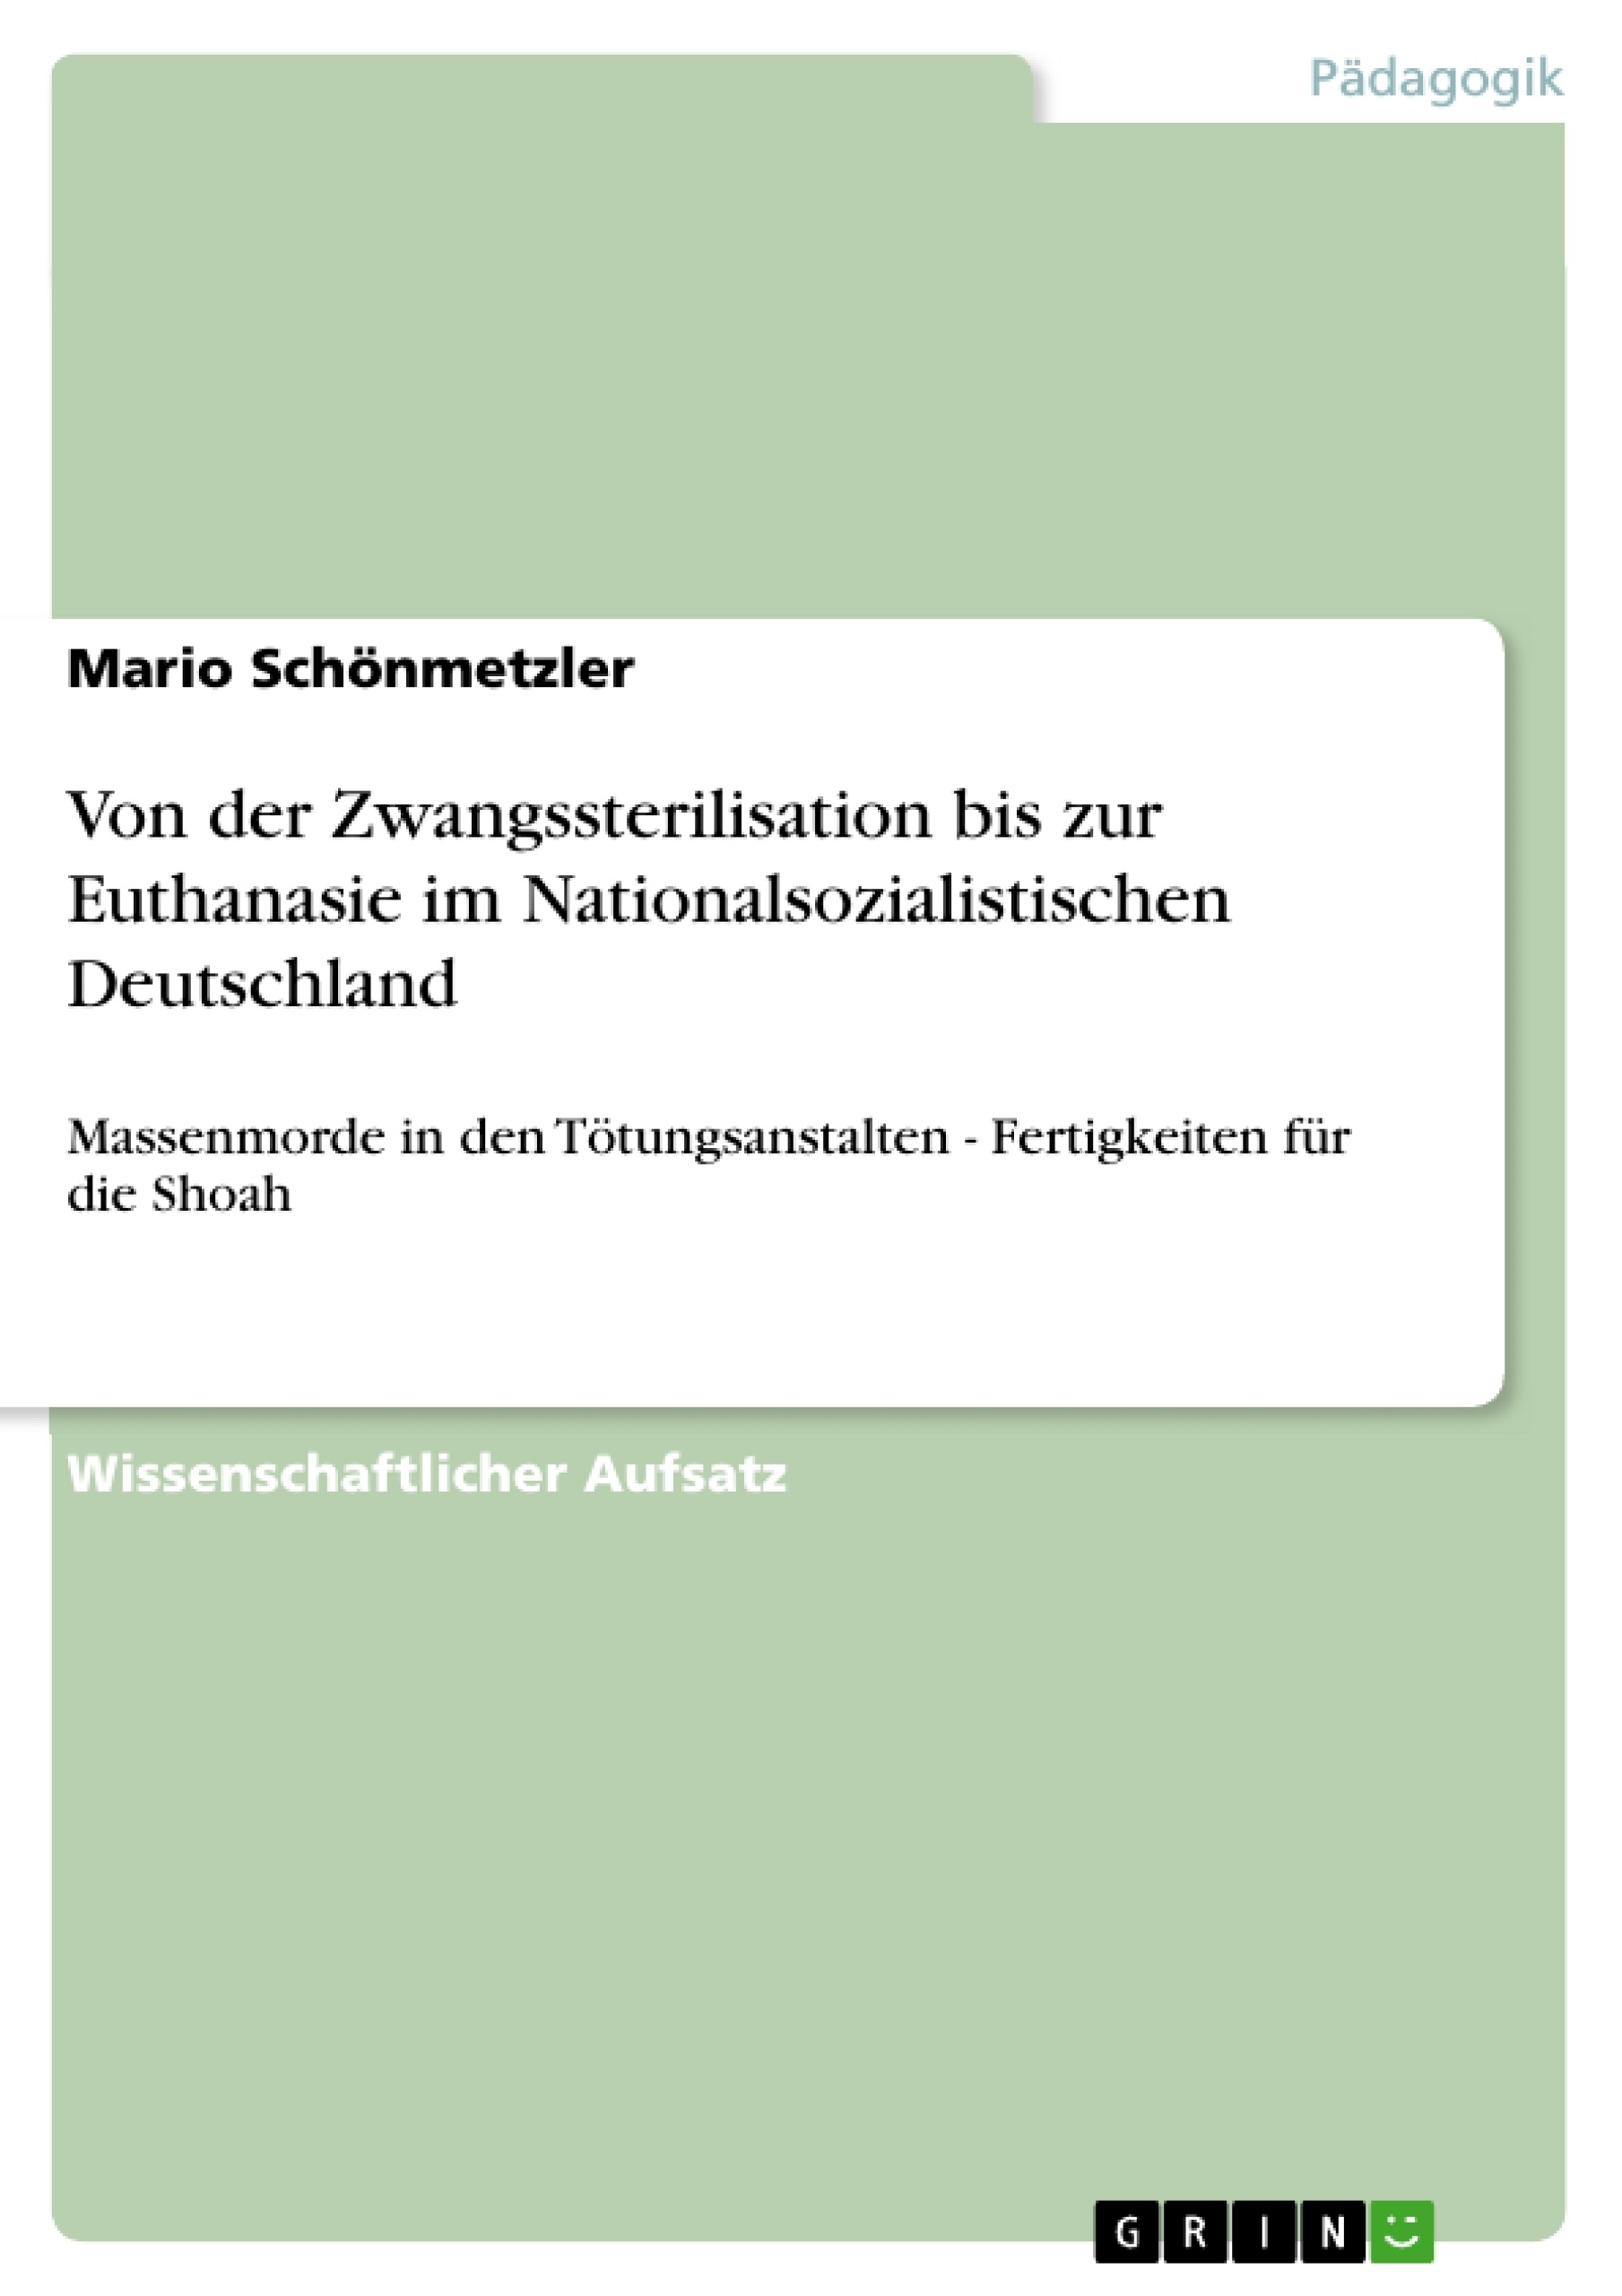 Title: Von der Zwangssterilisation bis zur Euthanasie im Nationalsozialistischen Deutschland